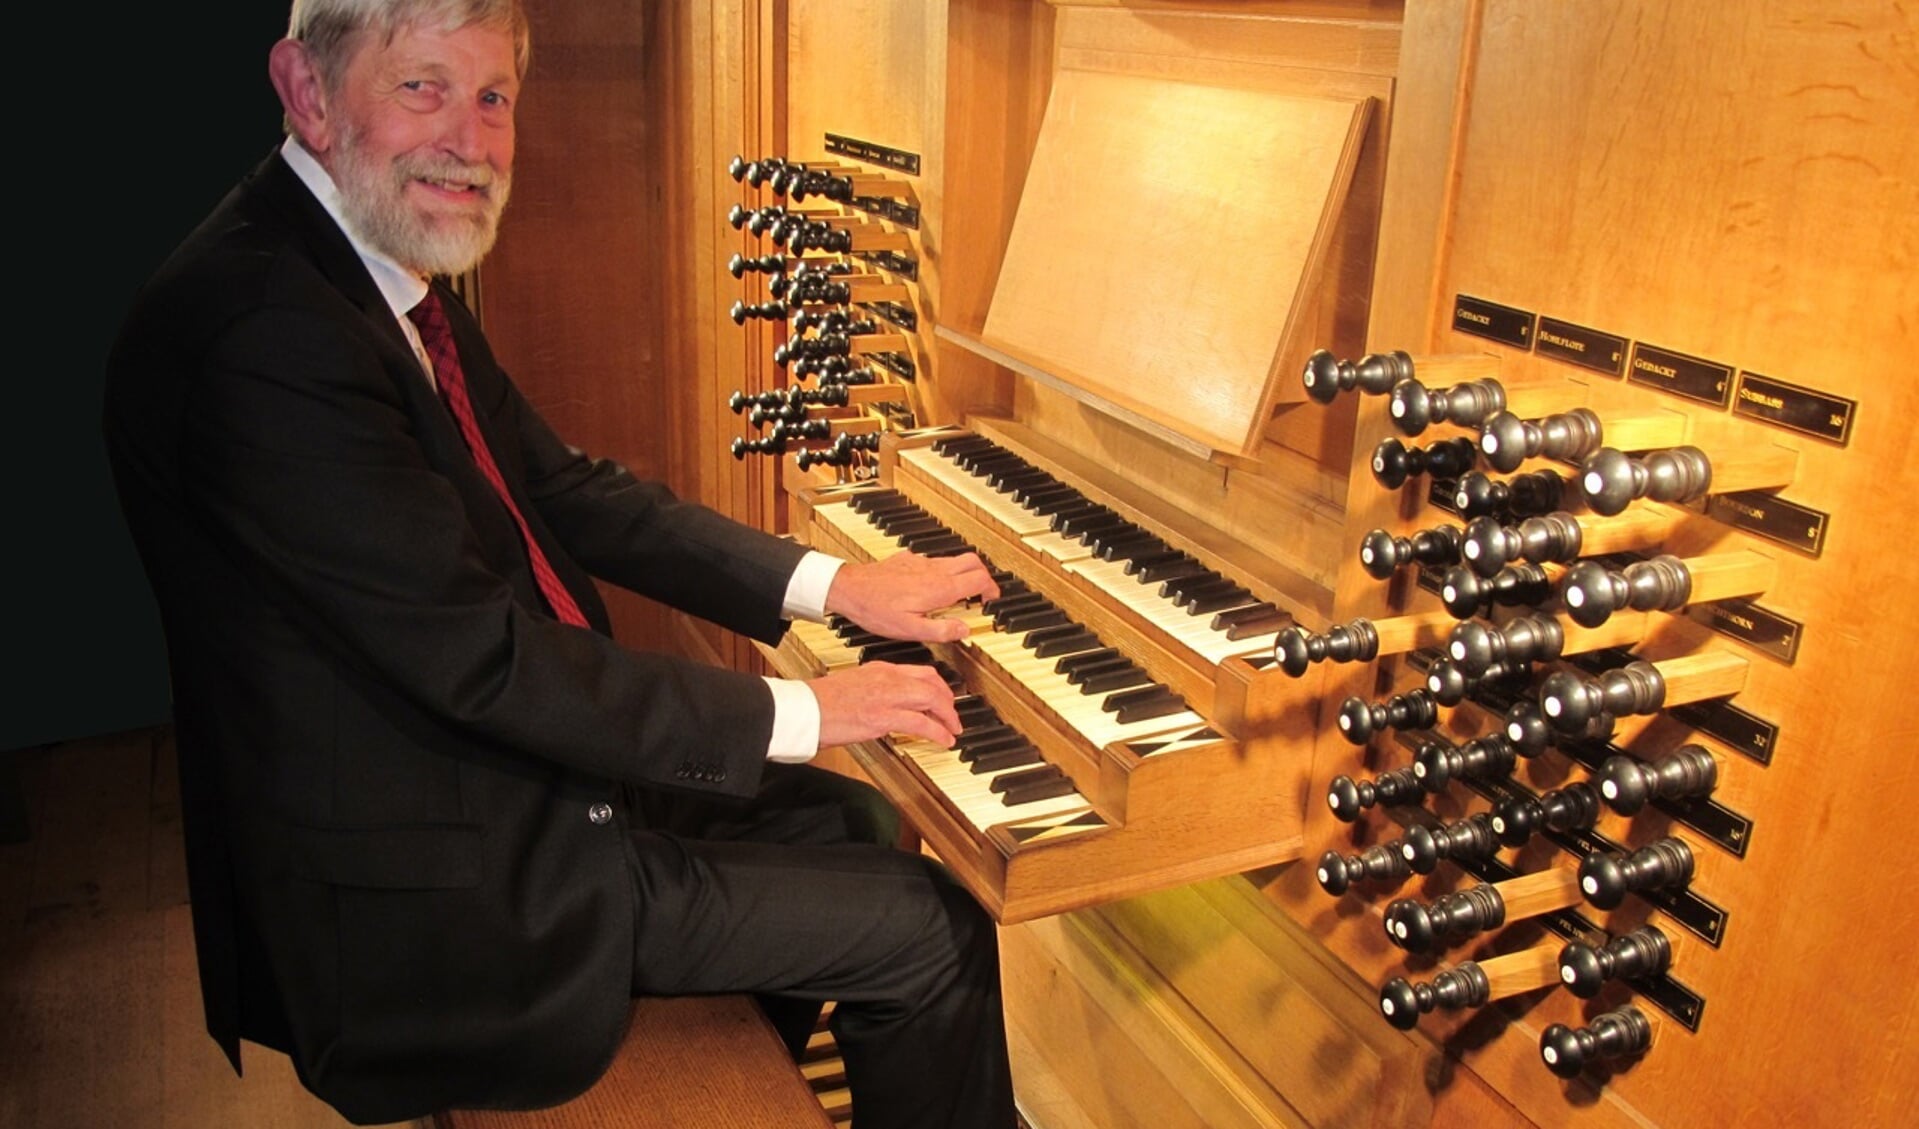 De vermaarde organist Dirk Out speelt 8 april op het Pels & Van Leeuwen-orgel in de hervormde kerk in Venhuizen. (Foto: aangeleverd)